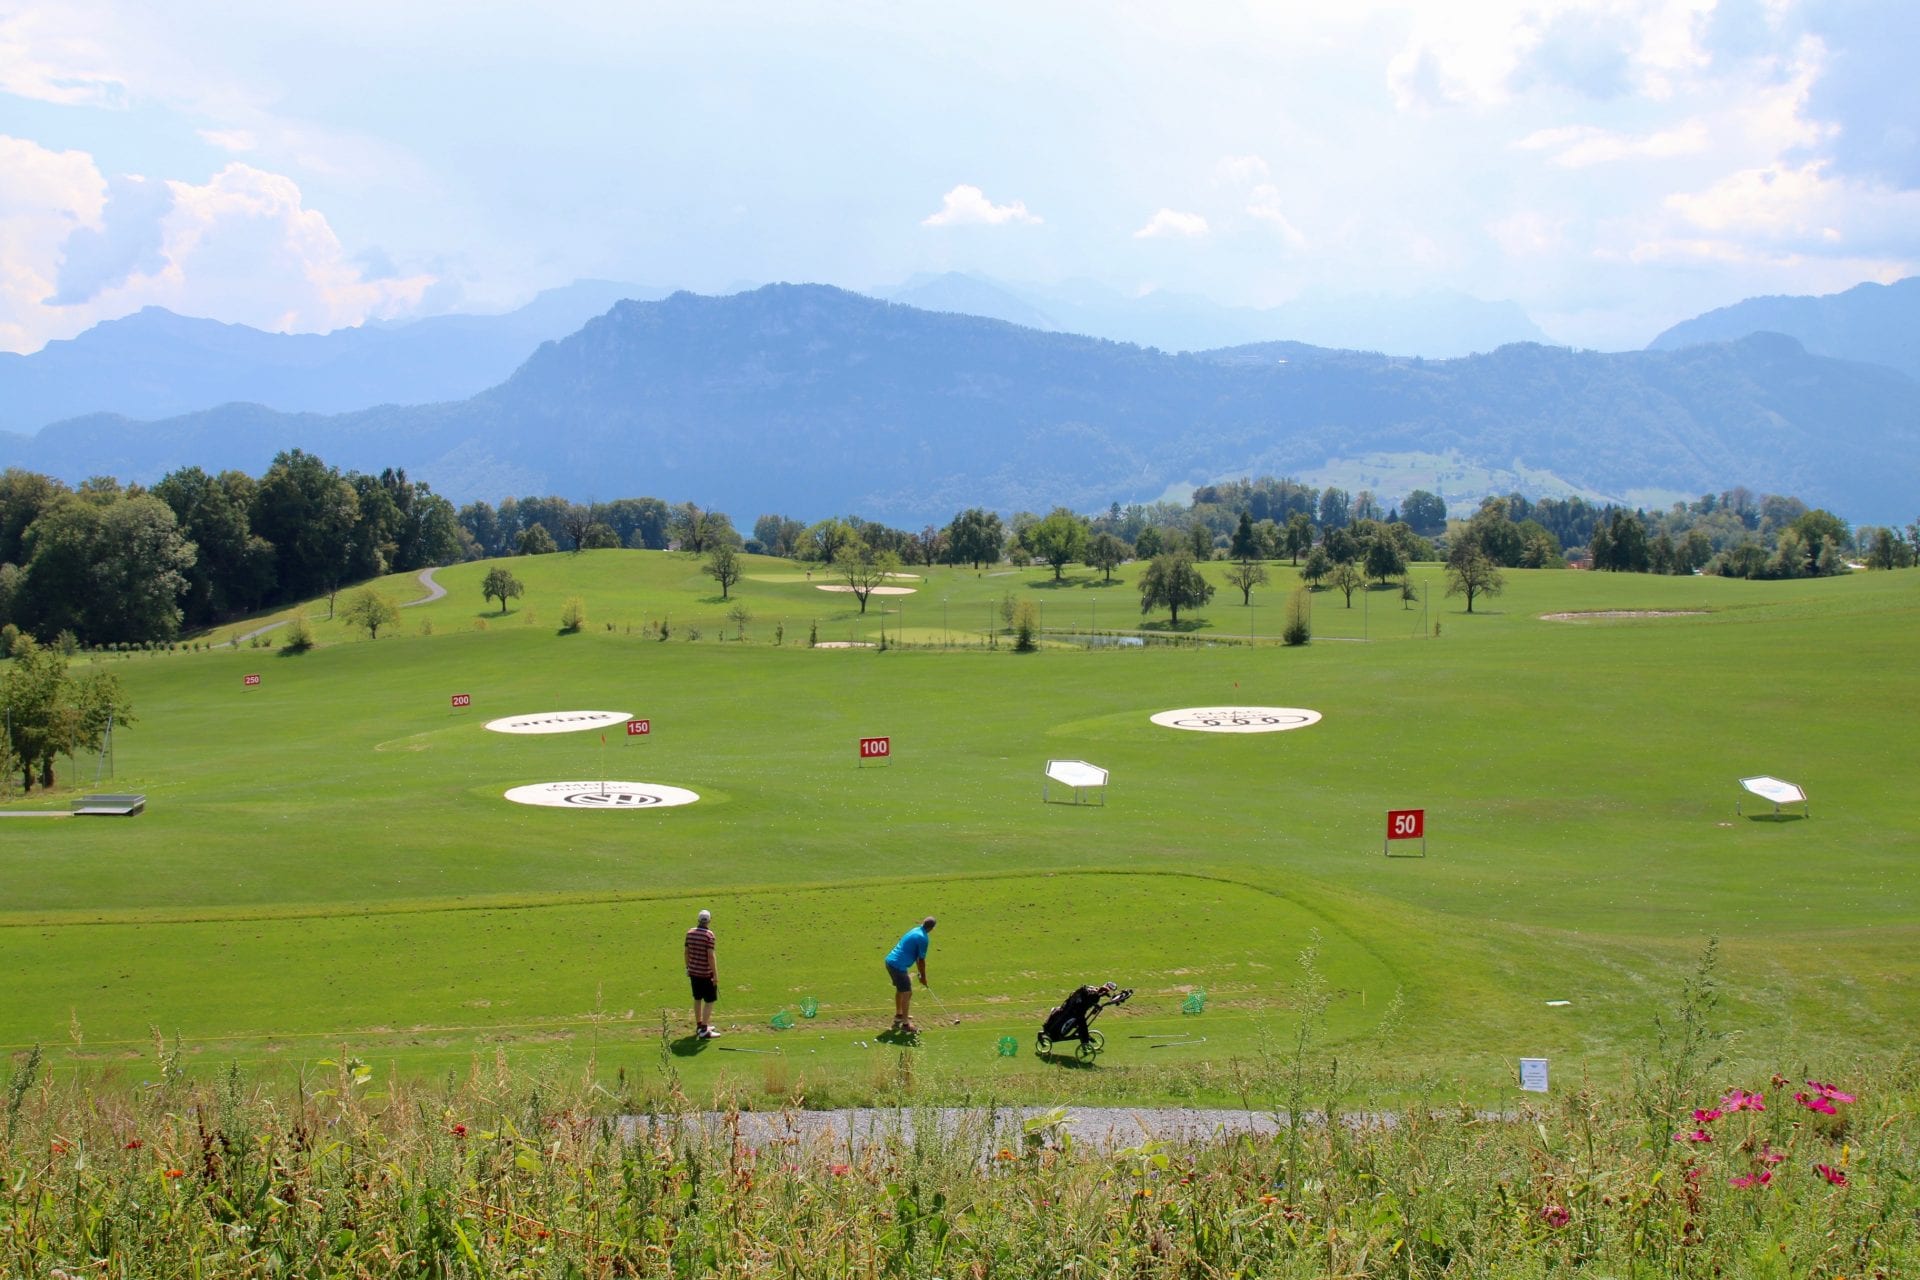 Il campo da golf di Meggen è stato concepito come area ricreativa locale per gli amanti del golf e della natura, su una superficie di circa 52 ettari.